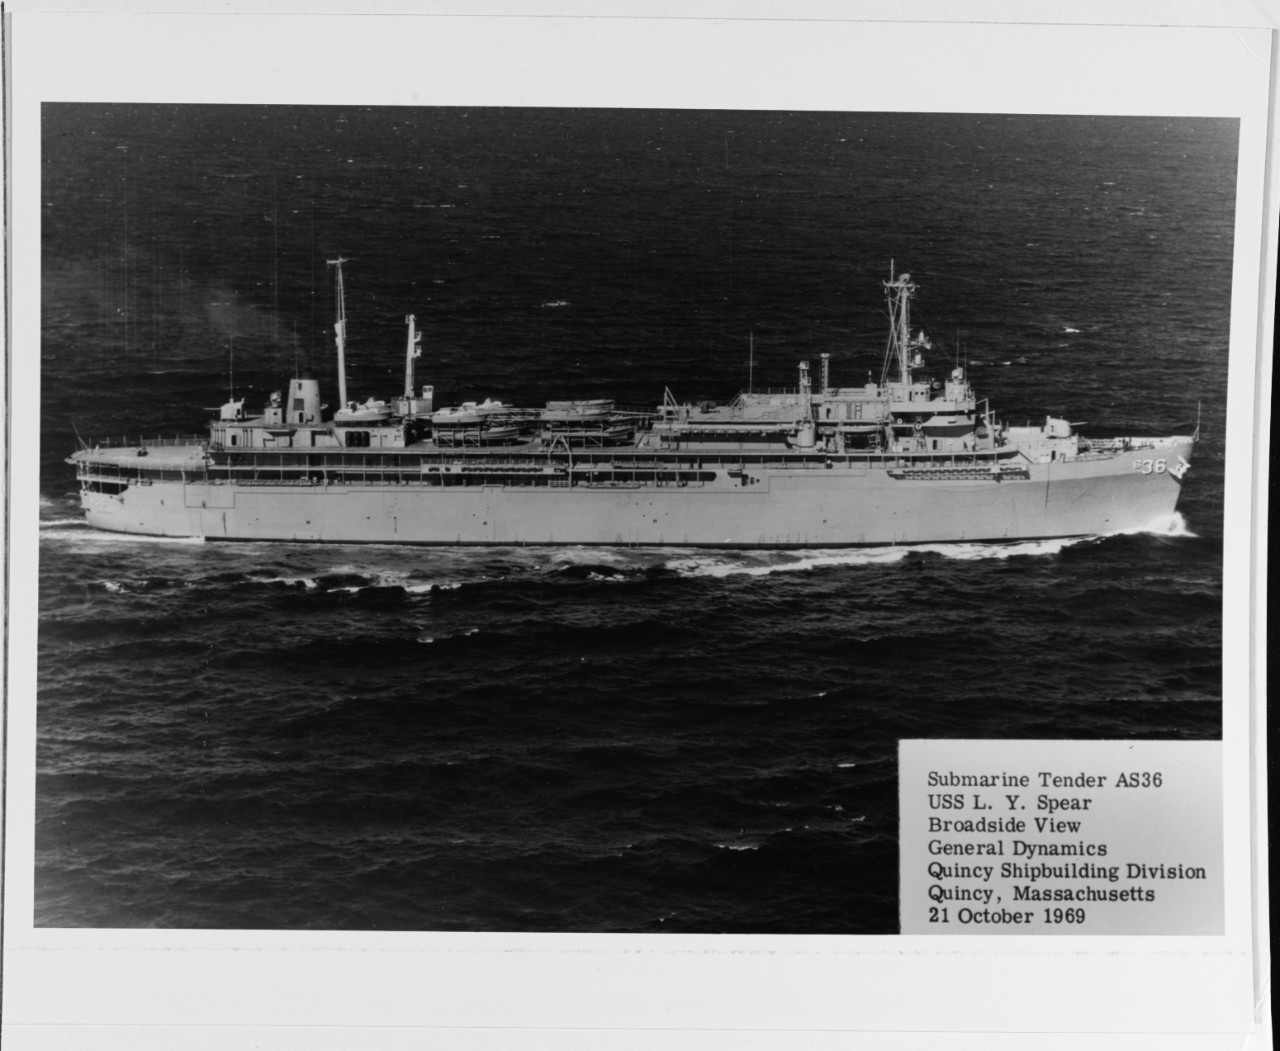 USS L.Y. SPEAR (AS-36)